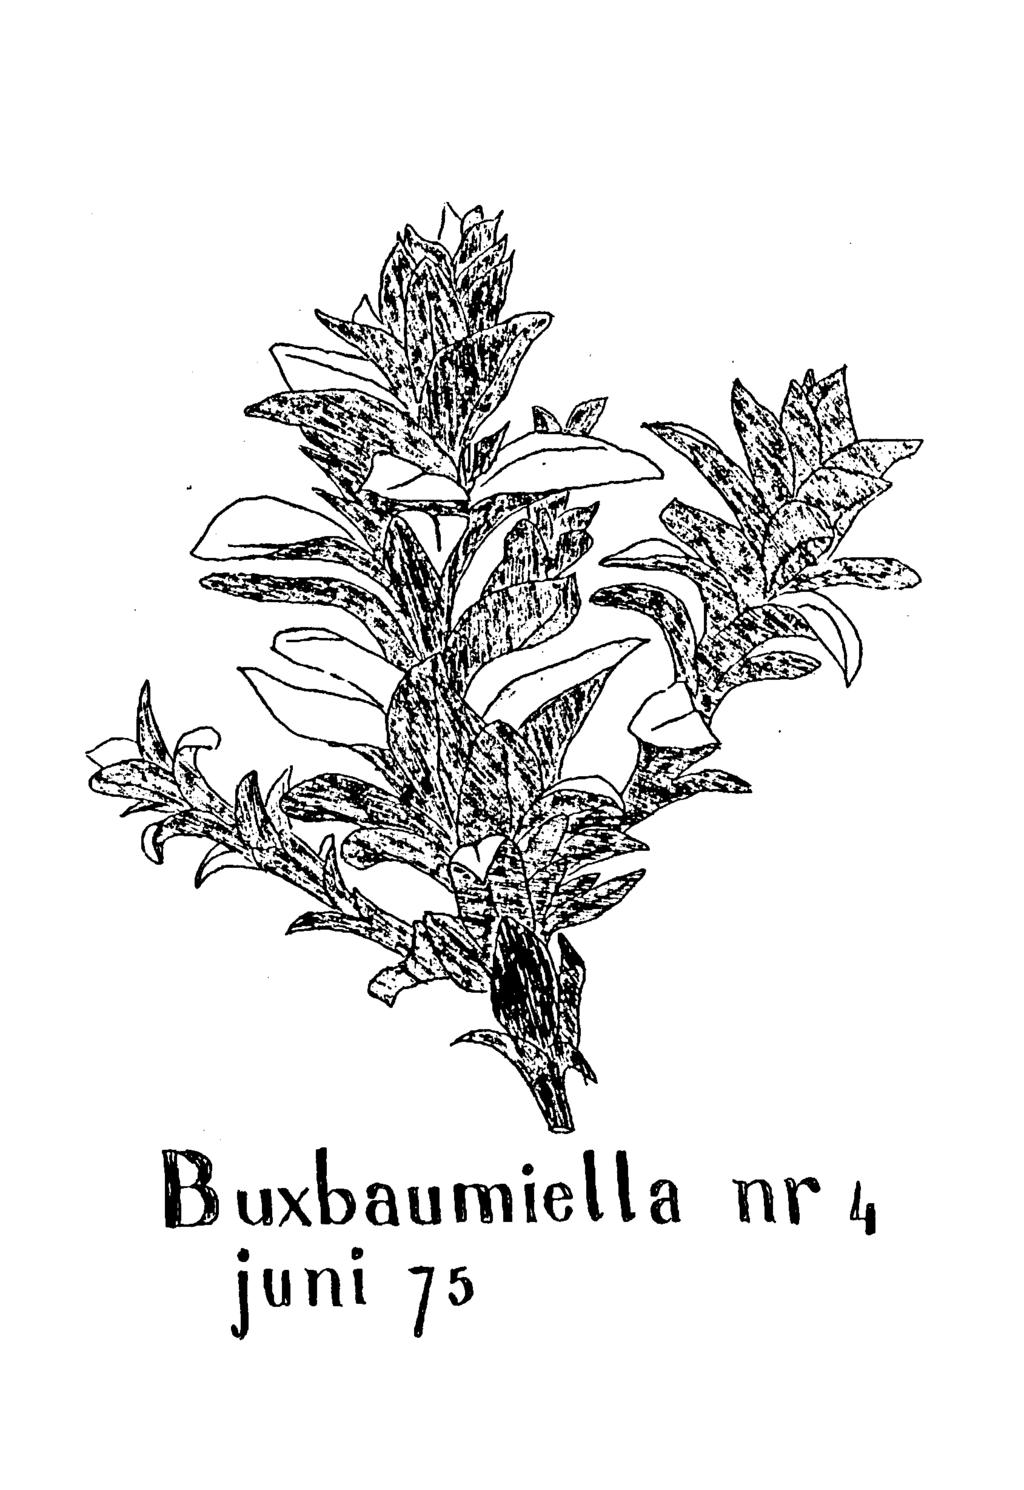 Buxbaumiella